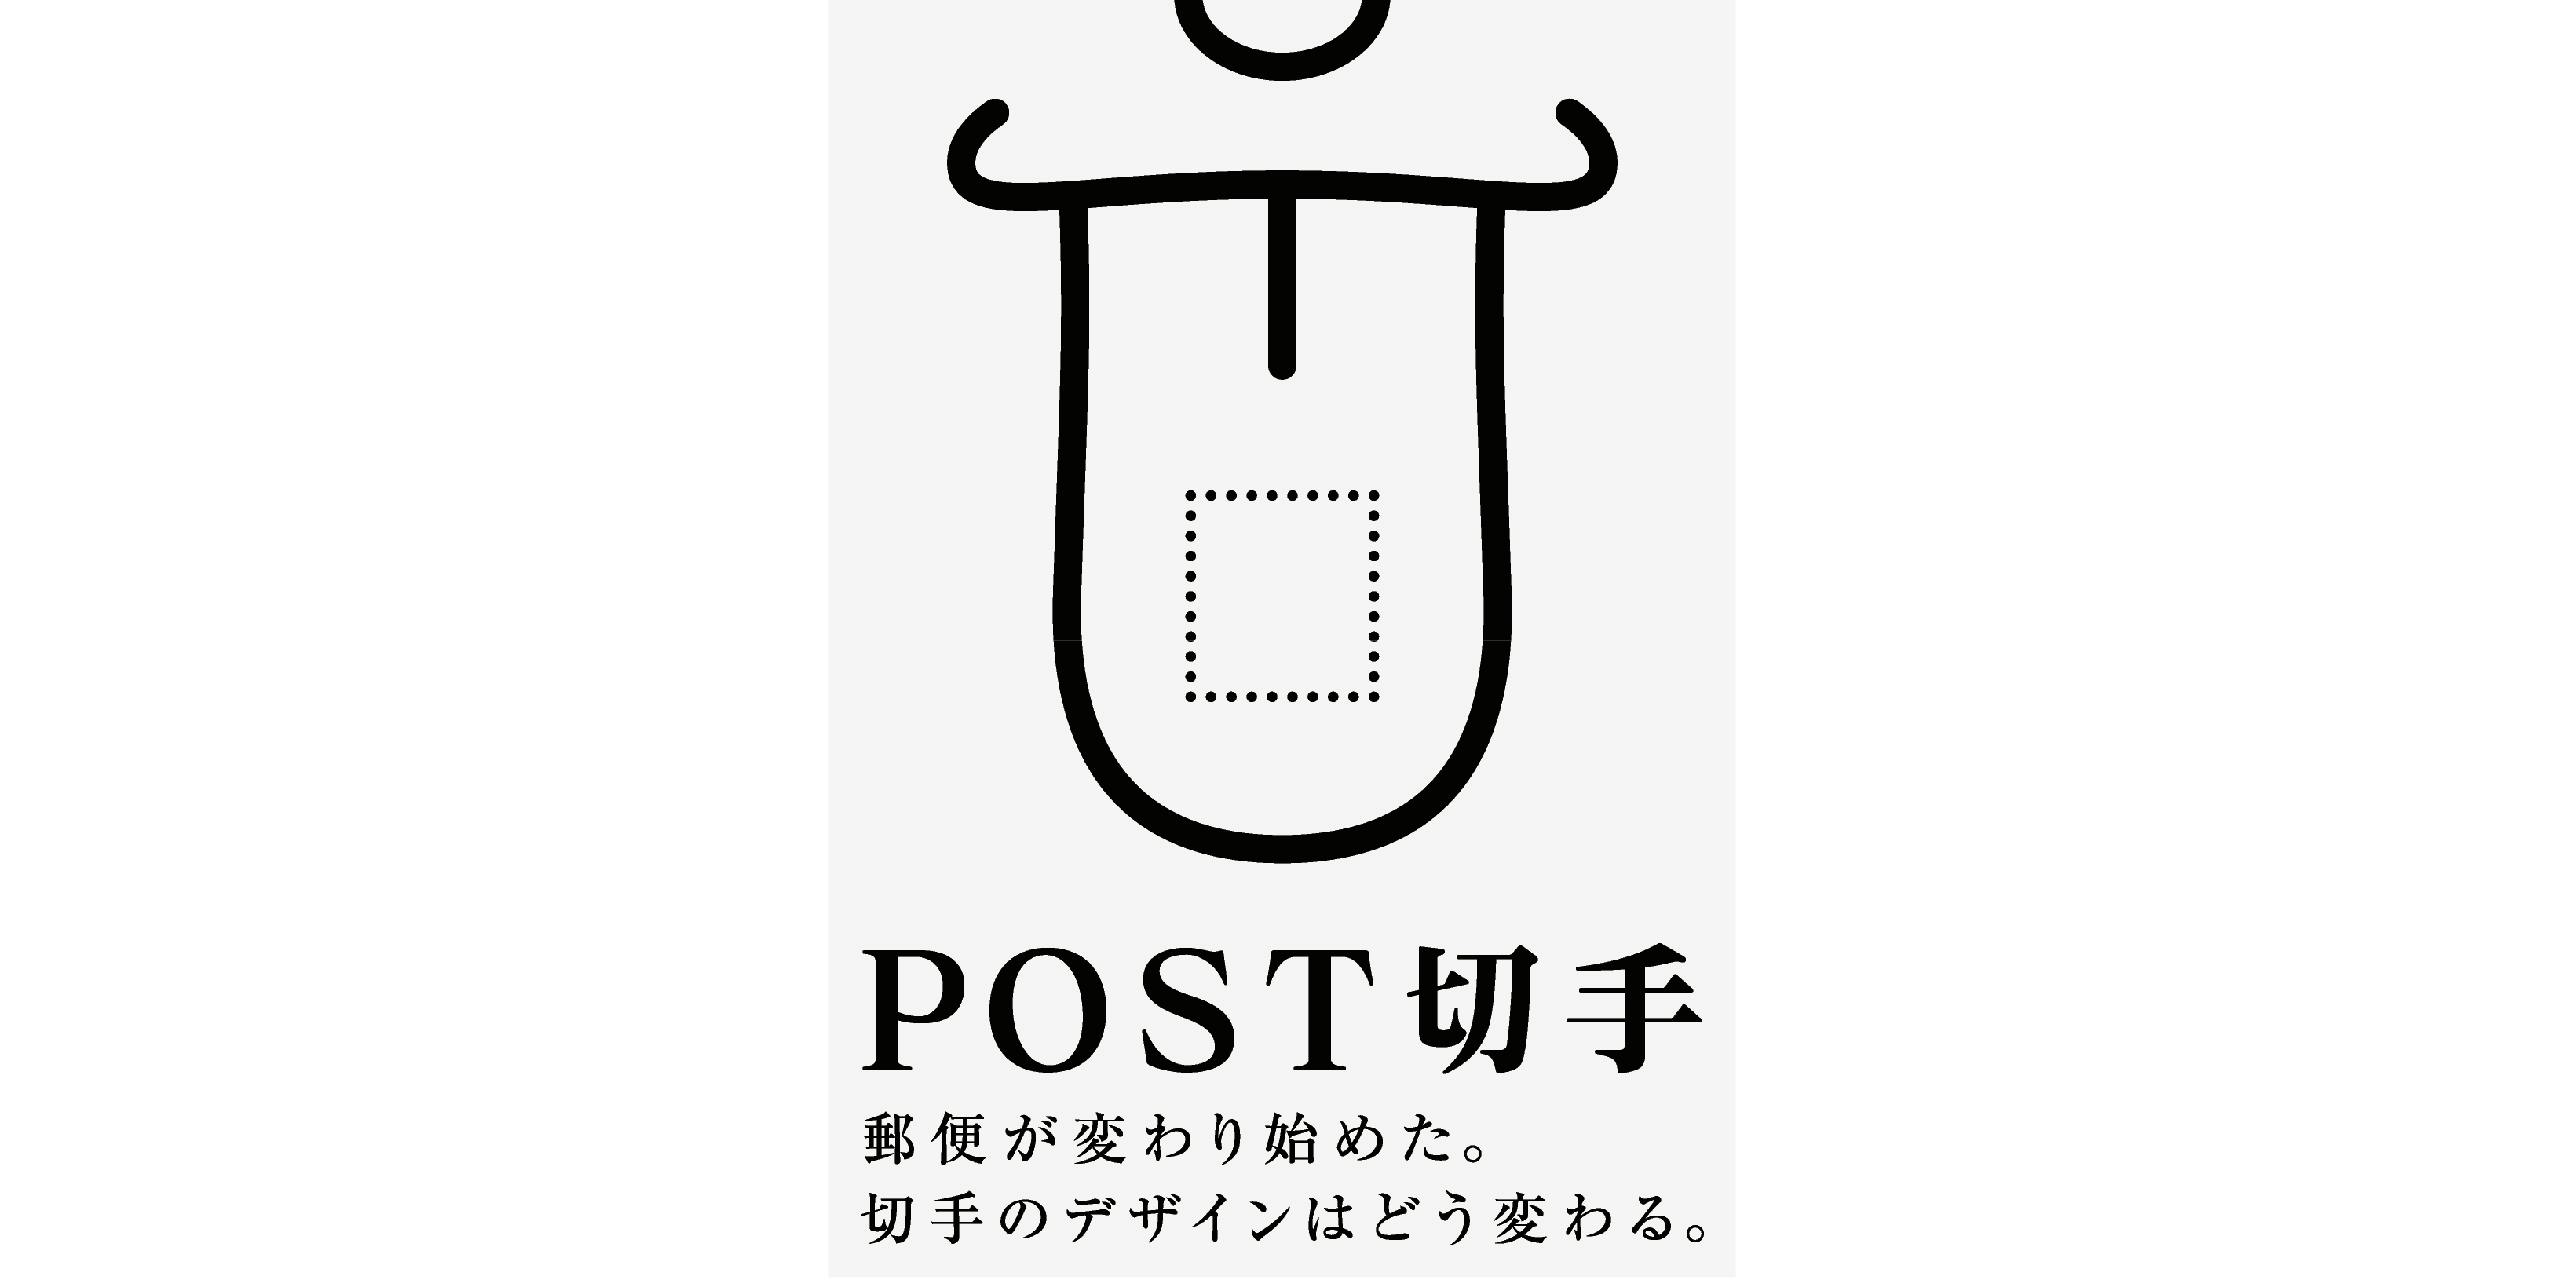 POST切手 郵便が変わり始めた。切手のデザインはどう変わる。